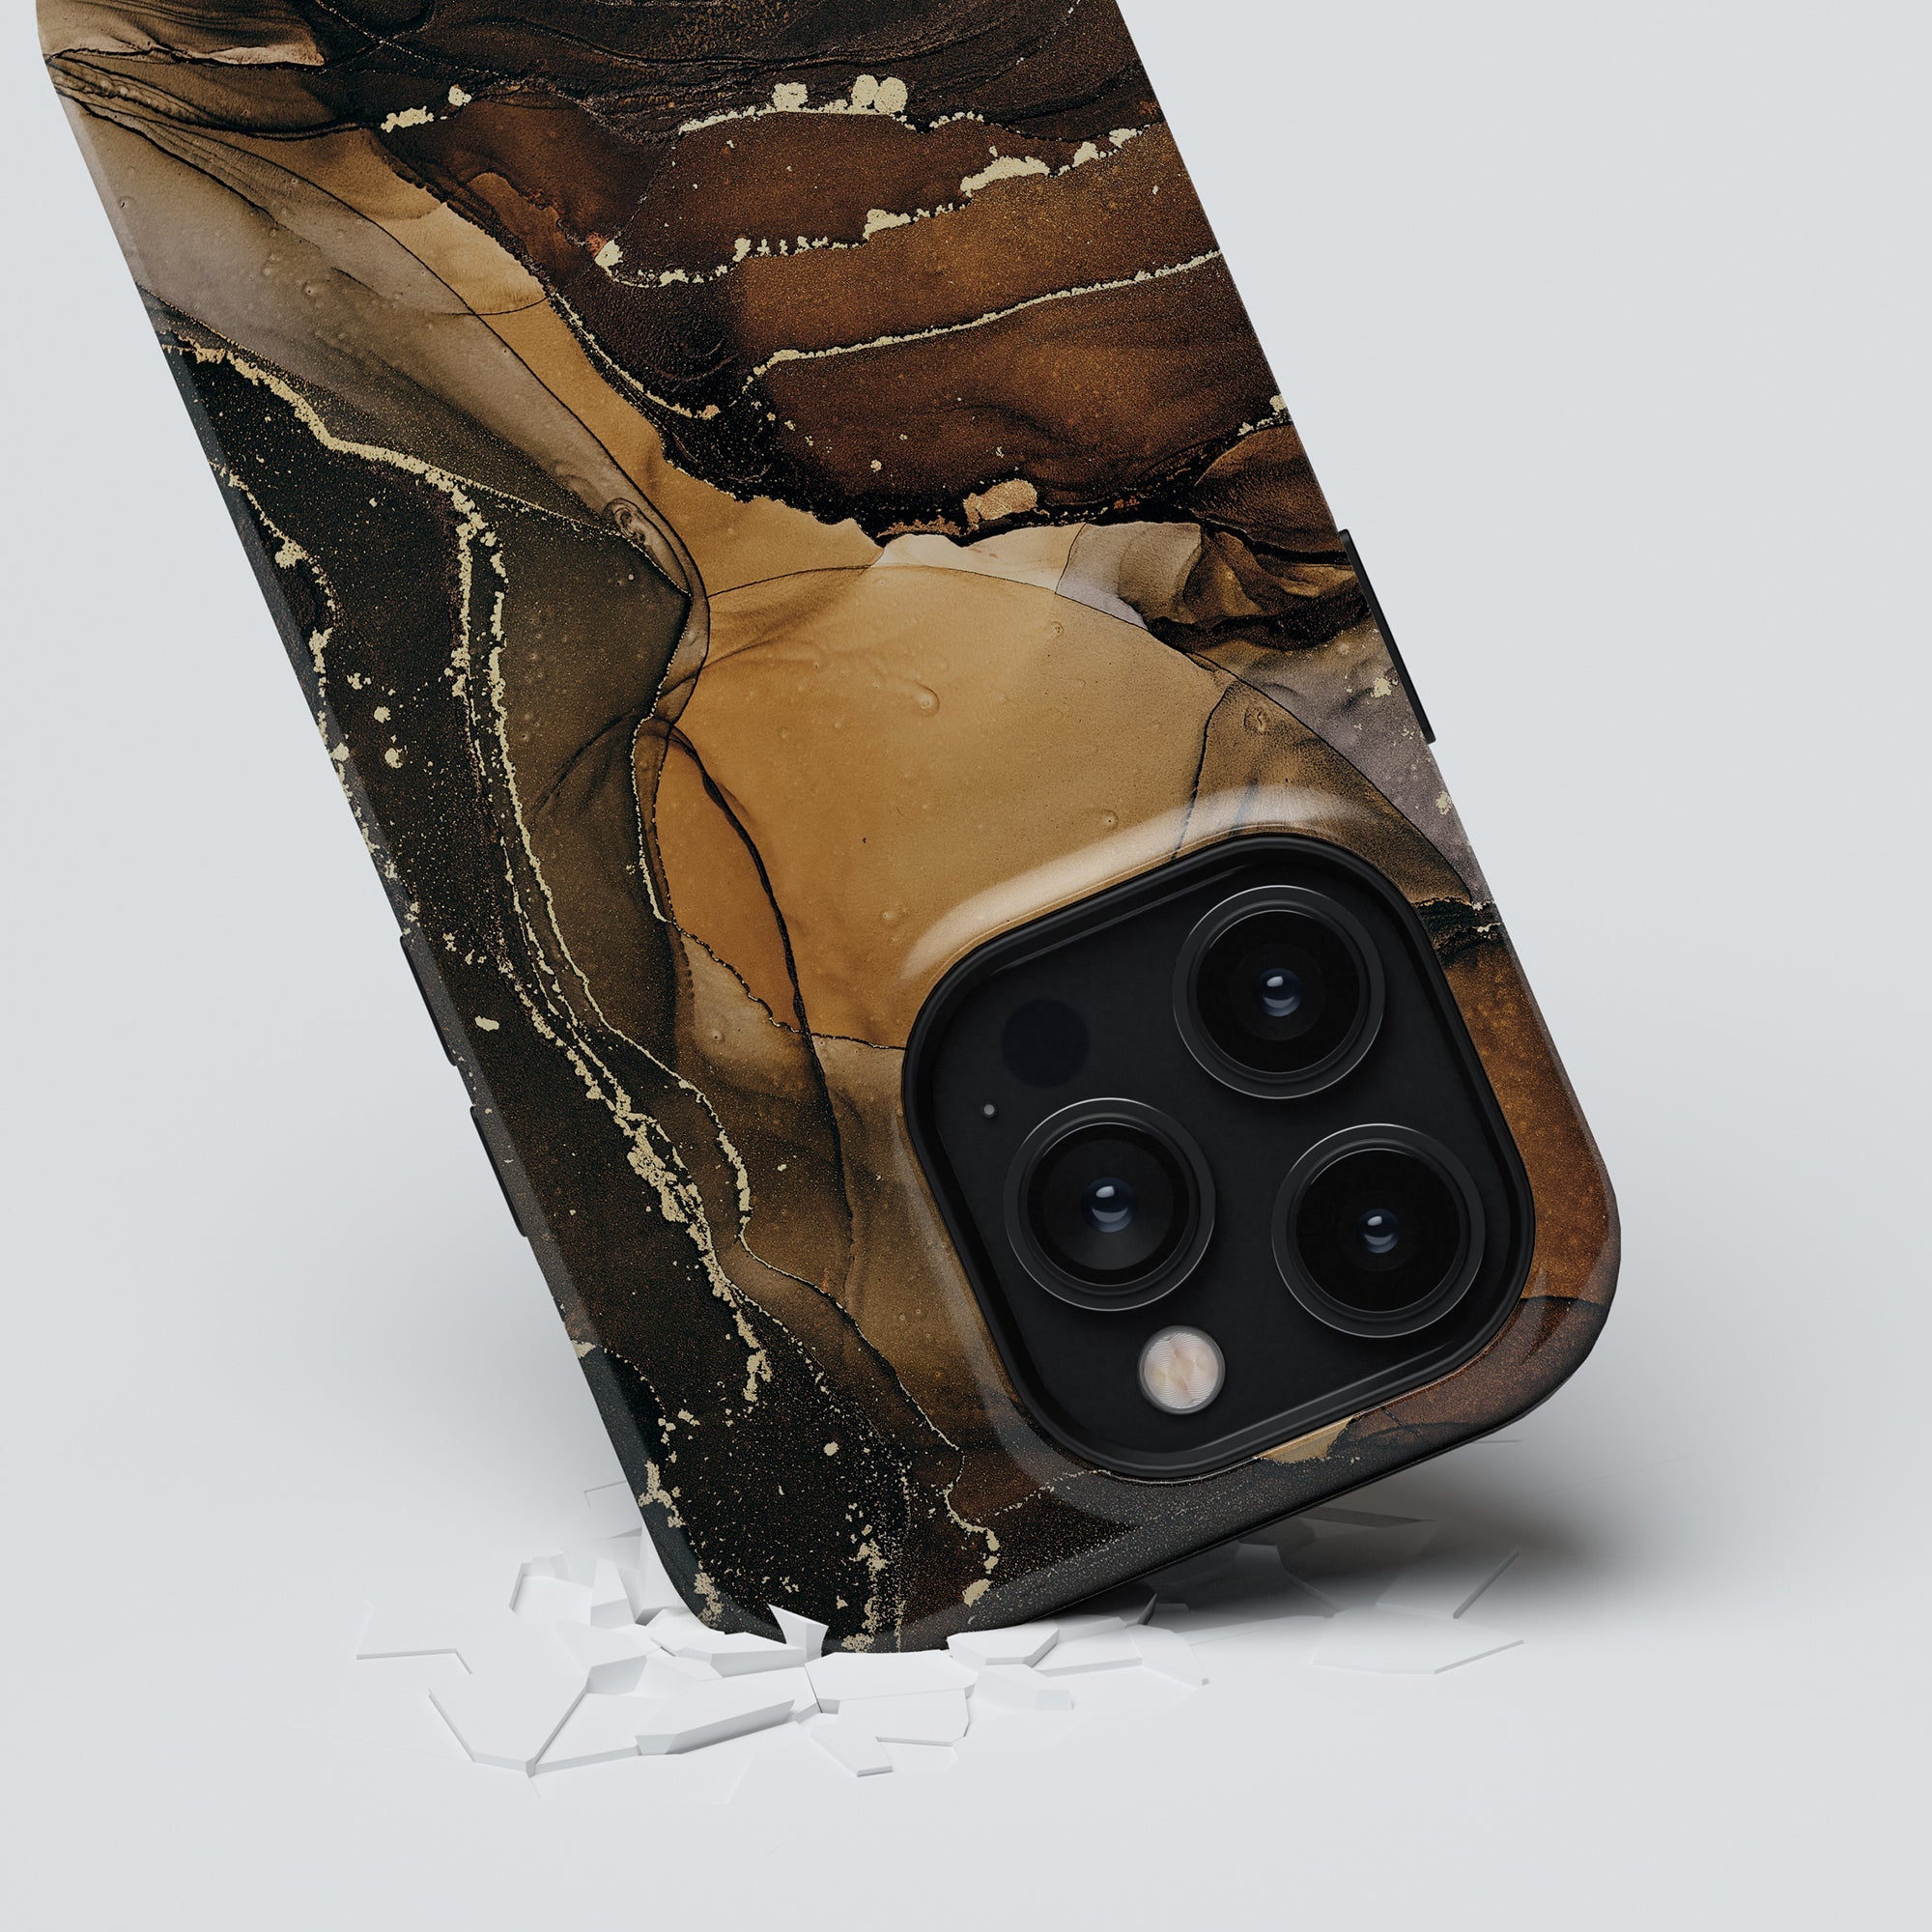 Ett Royal Marble - Tufft fodral för iPhone 11 pro, designat med ett fantastiskt svart och brunt marmormönster.